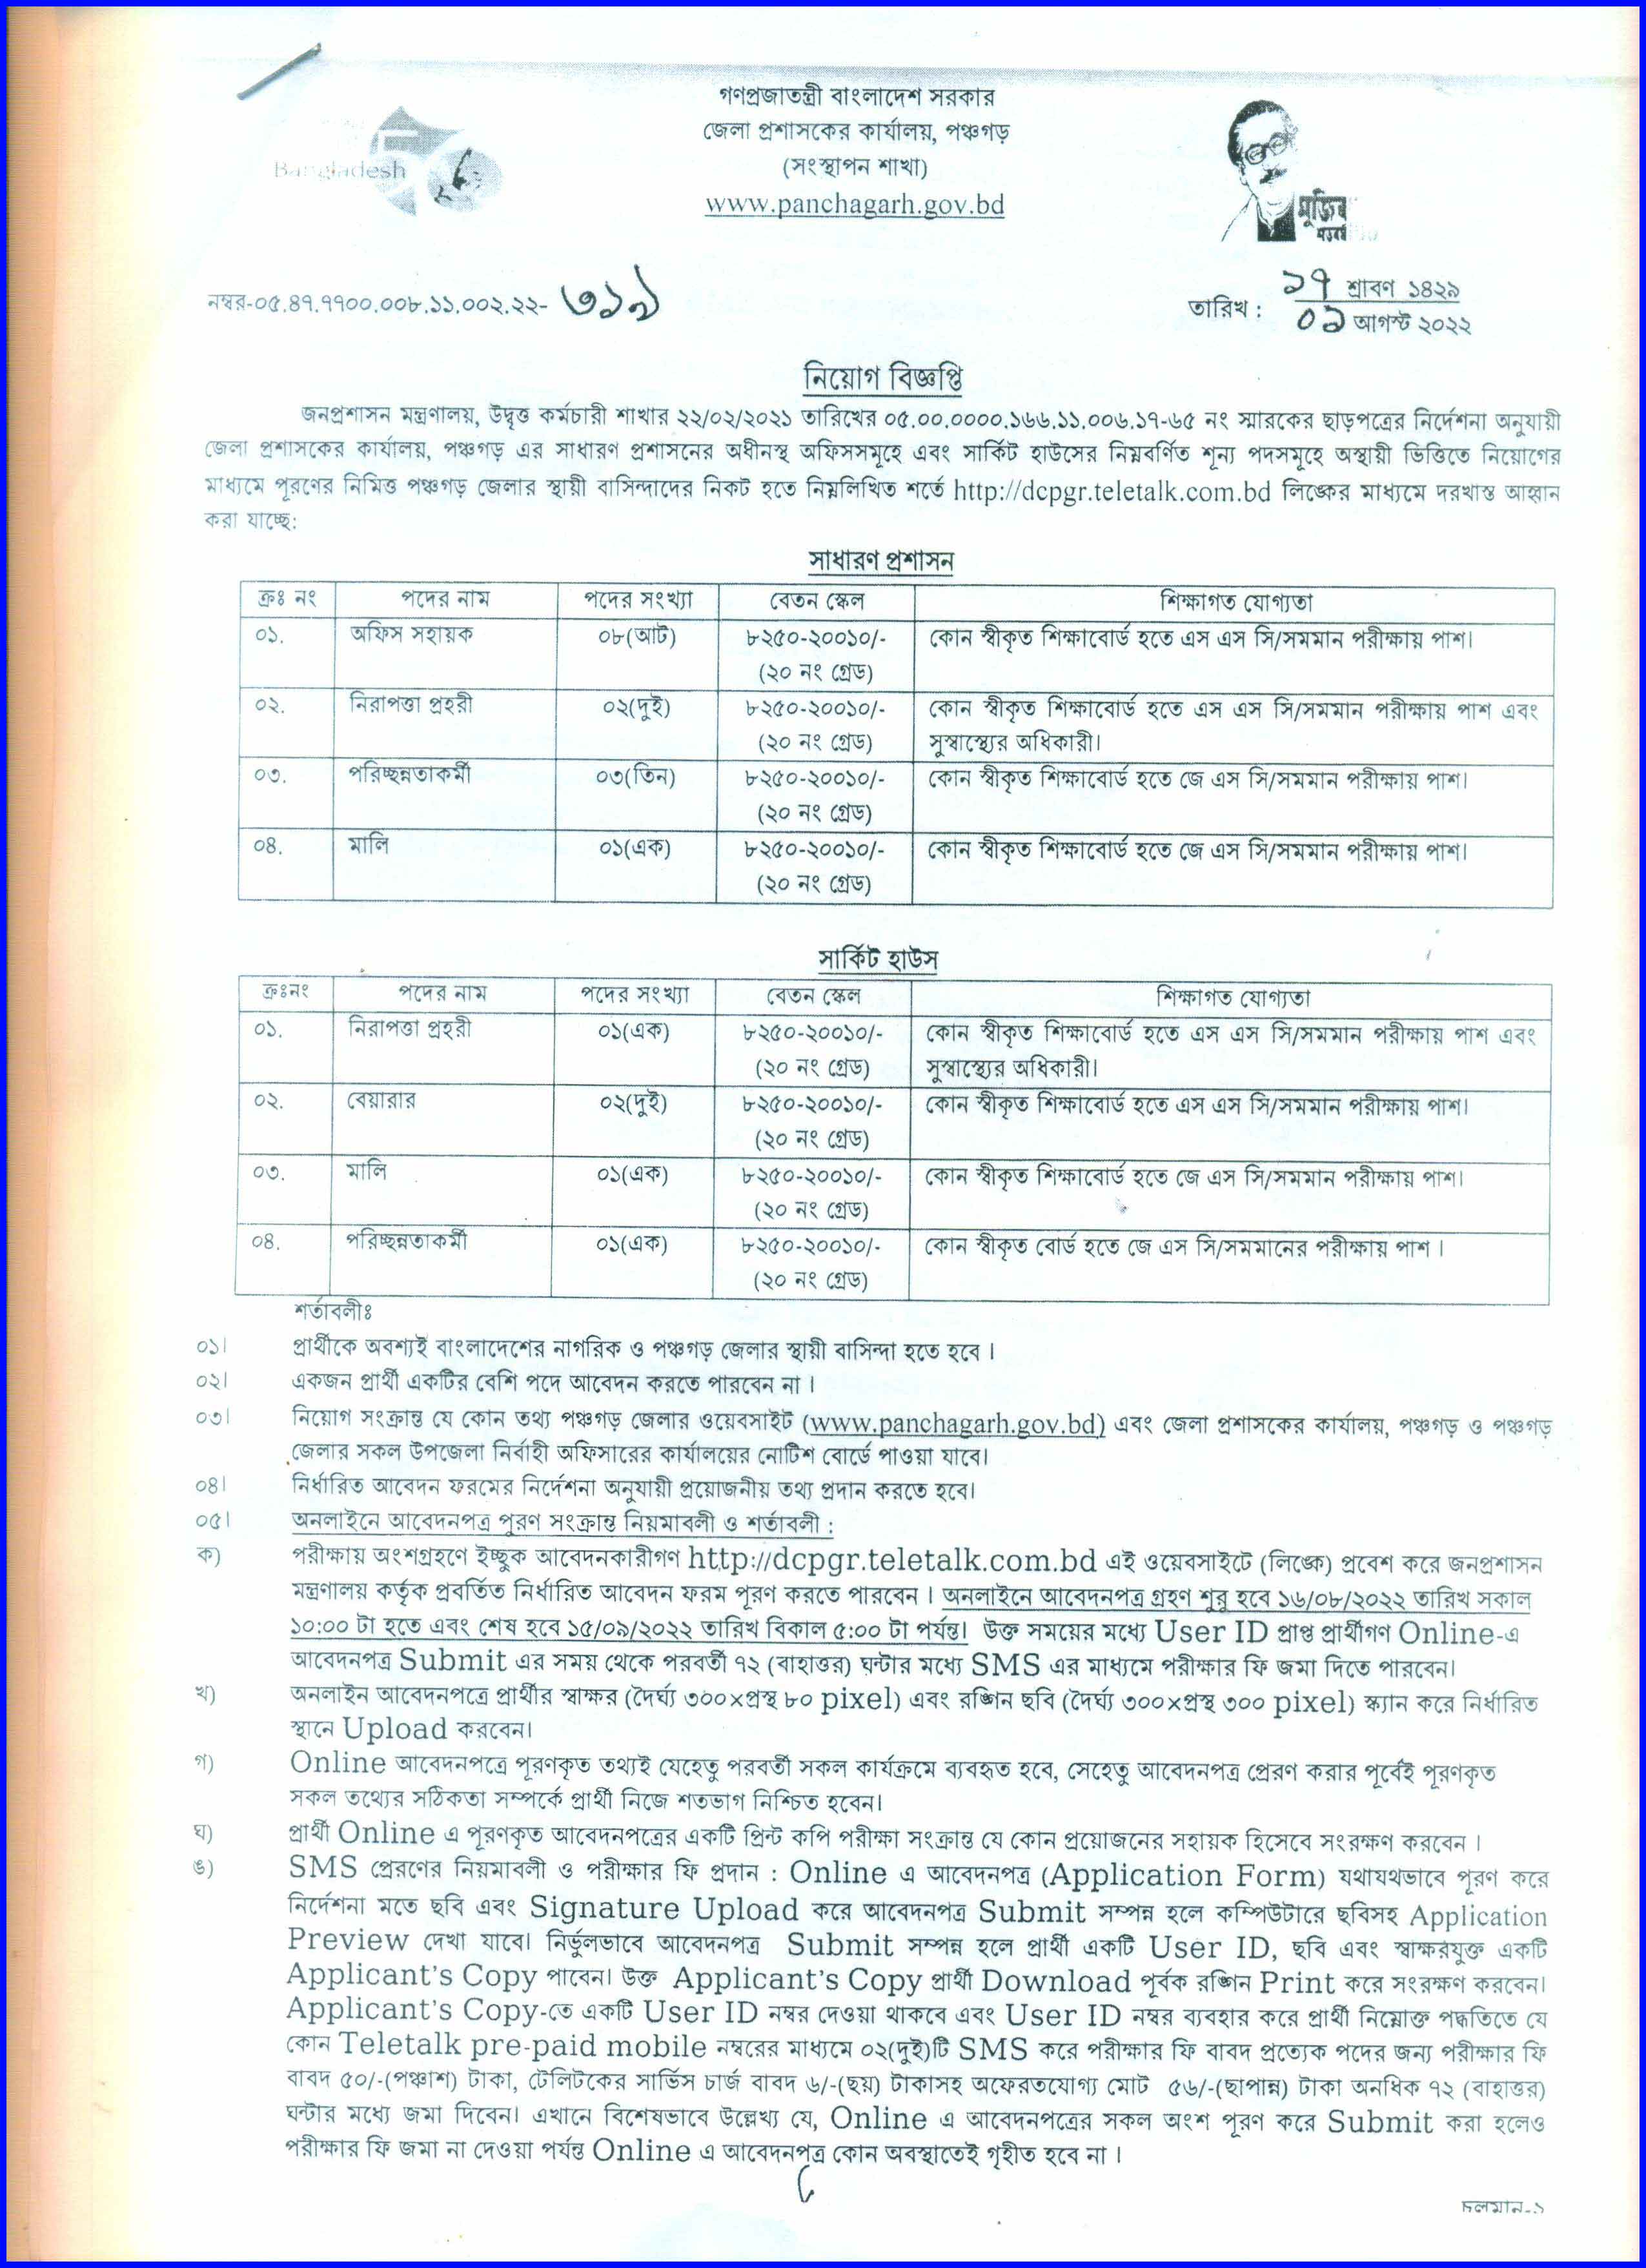 পঞ্চগড় ডিসি অফিসের নতুন নিয়োগ বিজ্ঞপ্তি আগস্ট ২০২২ । Panchagarh DC Office New Recruitment Circular August 2022.